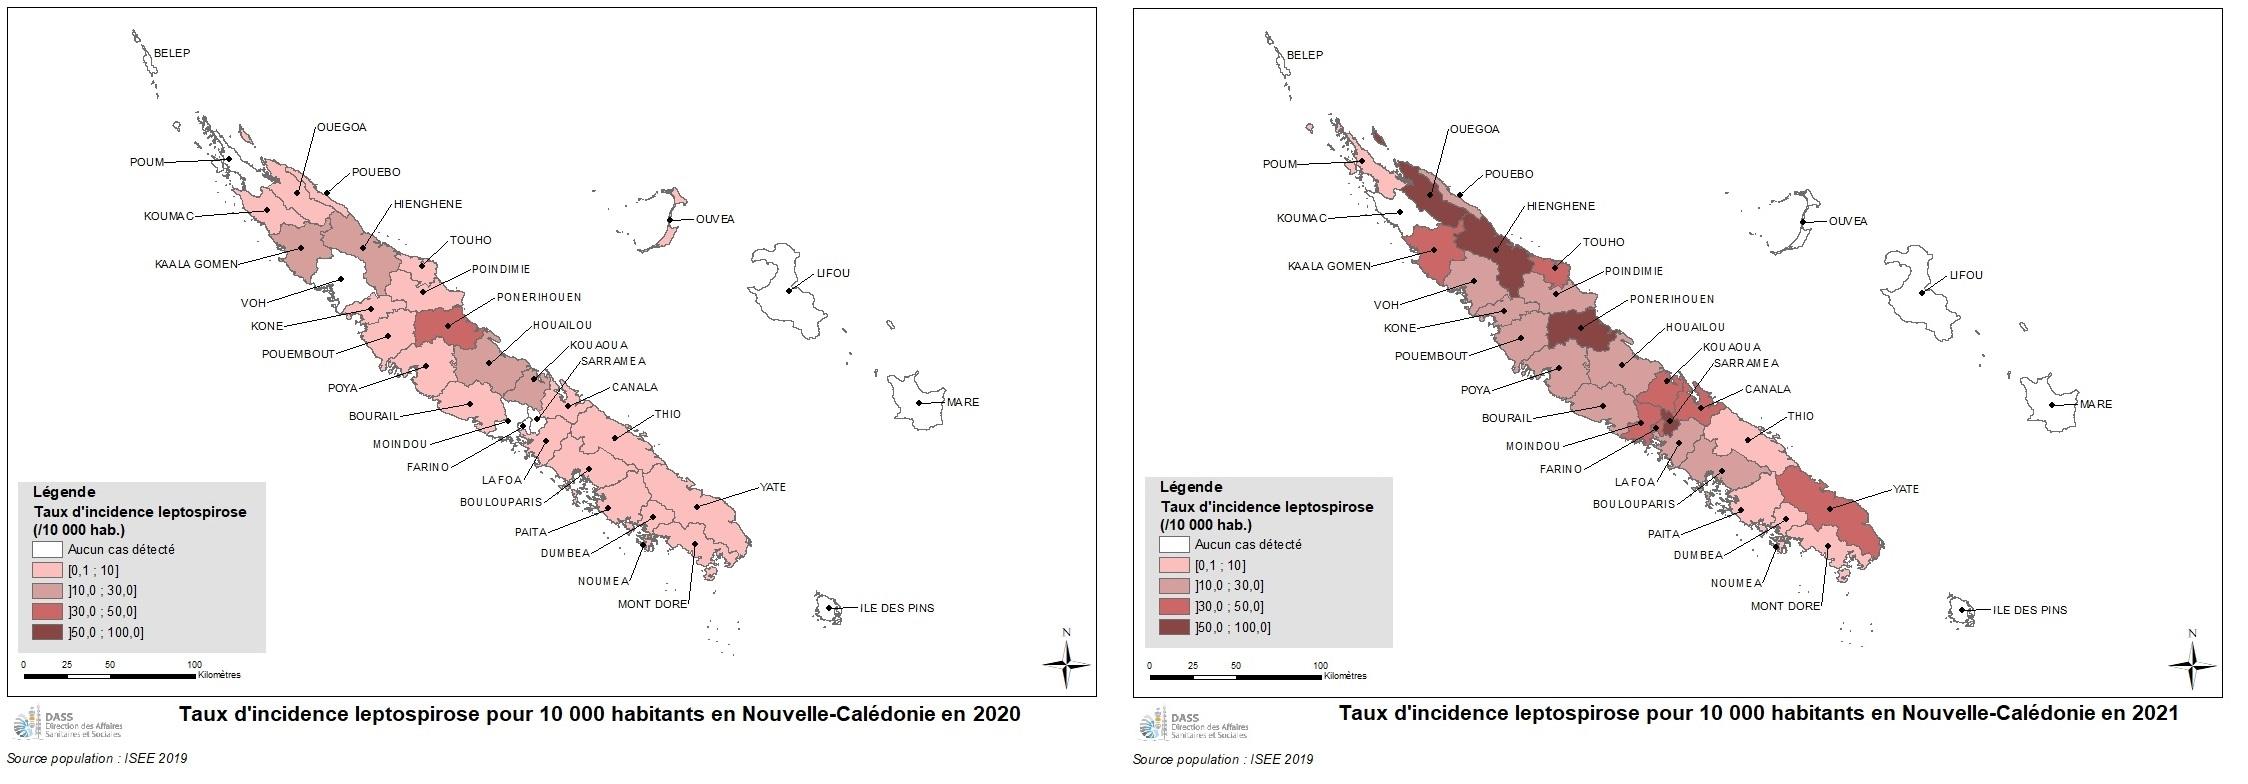 Cartes du taux d'incidence de leptospirose en NC en 2020 (à gauche) et 2021 (à droite)